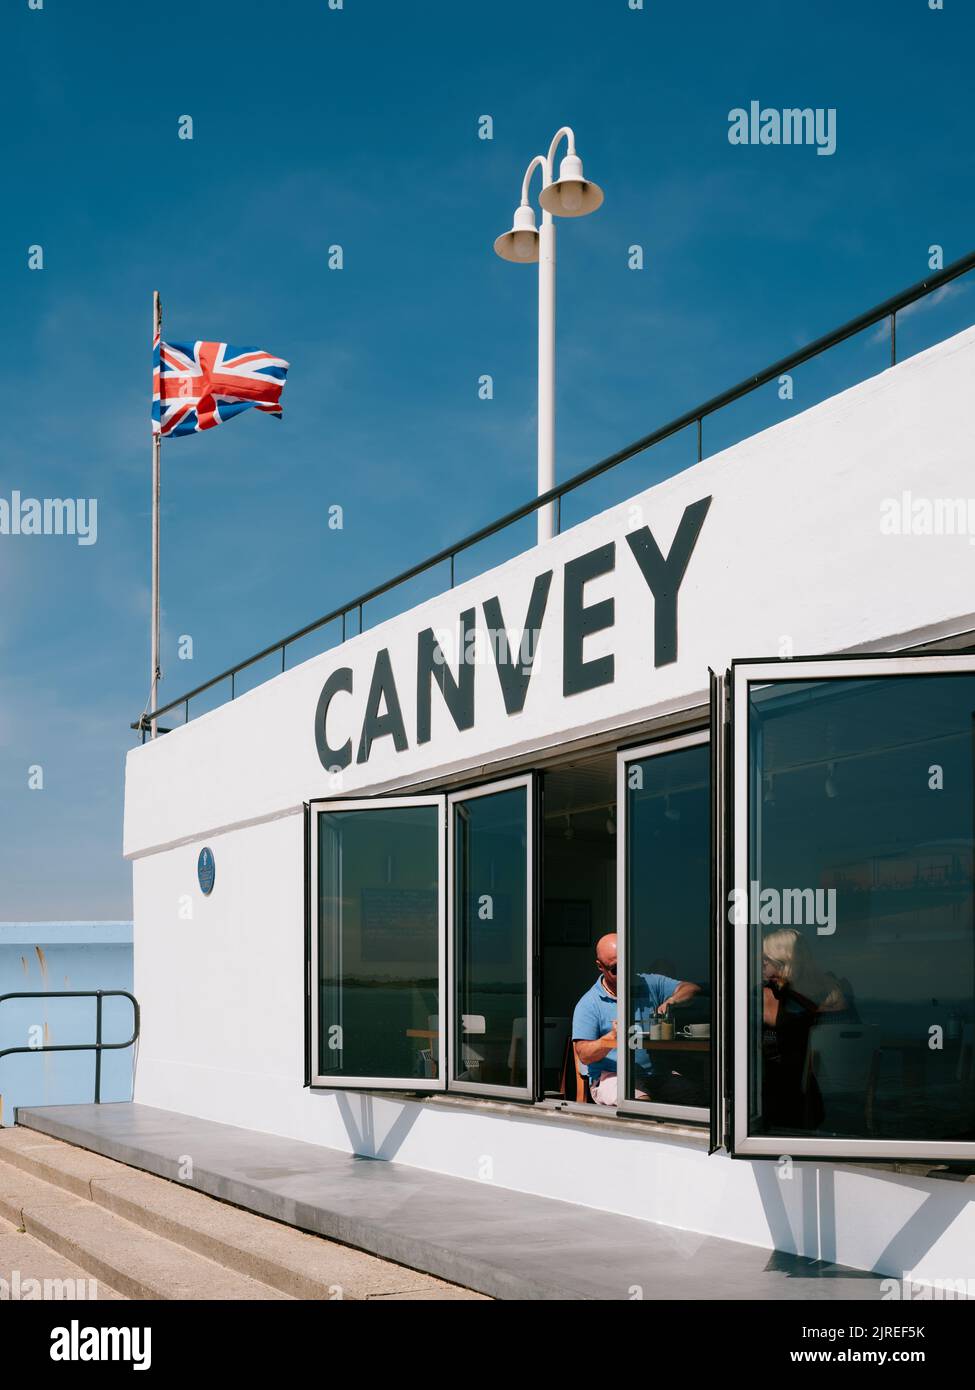 Die modernistische Betonarchitektur am Meer des Labworth Cafe Restaurant in Canvey Island, Thames Estuary, Essex, England, Großbritannien - Essex Sommerleben Stockfoto